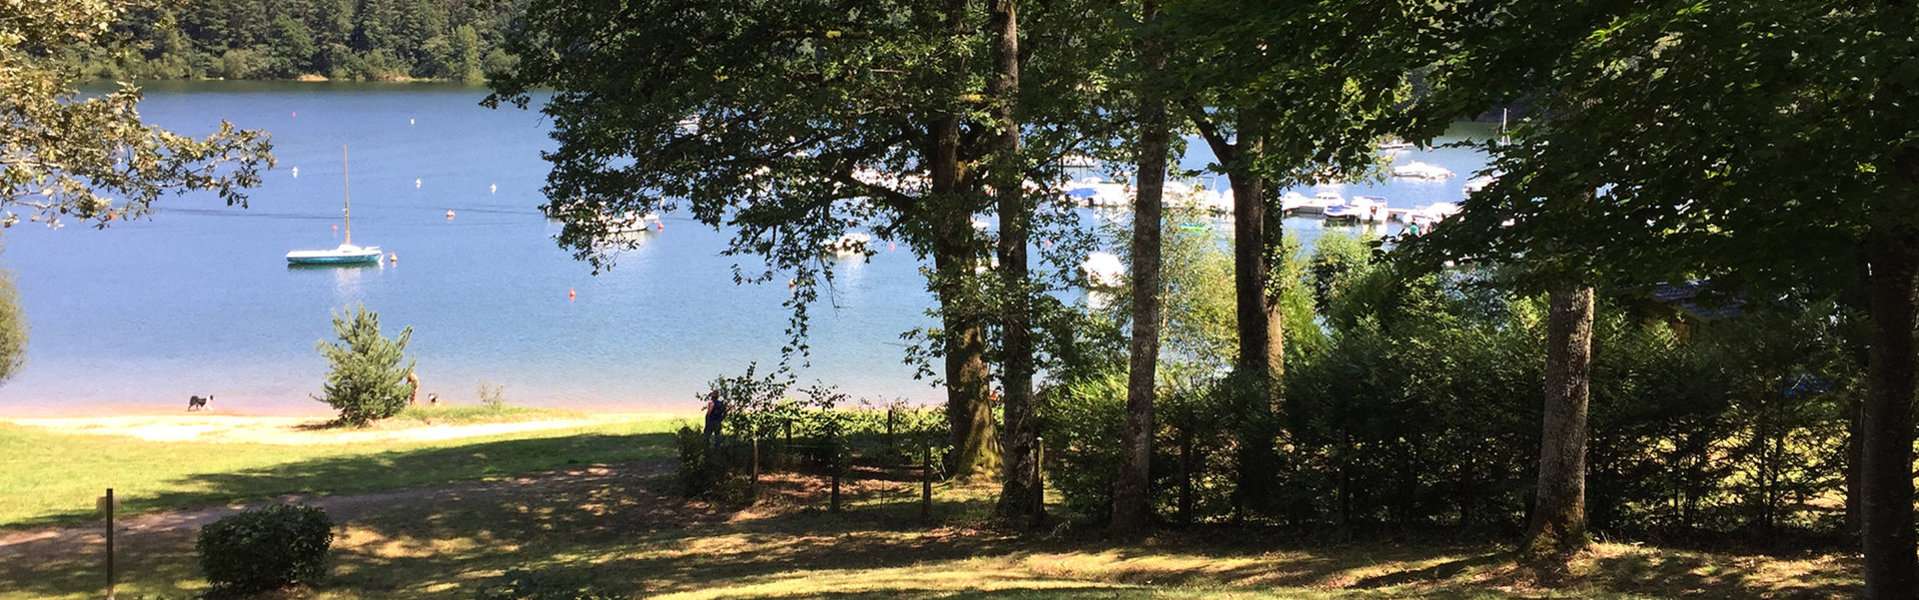 Camping dans le Cantal en Auvergne au bord du lac